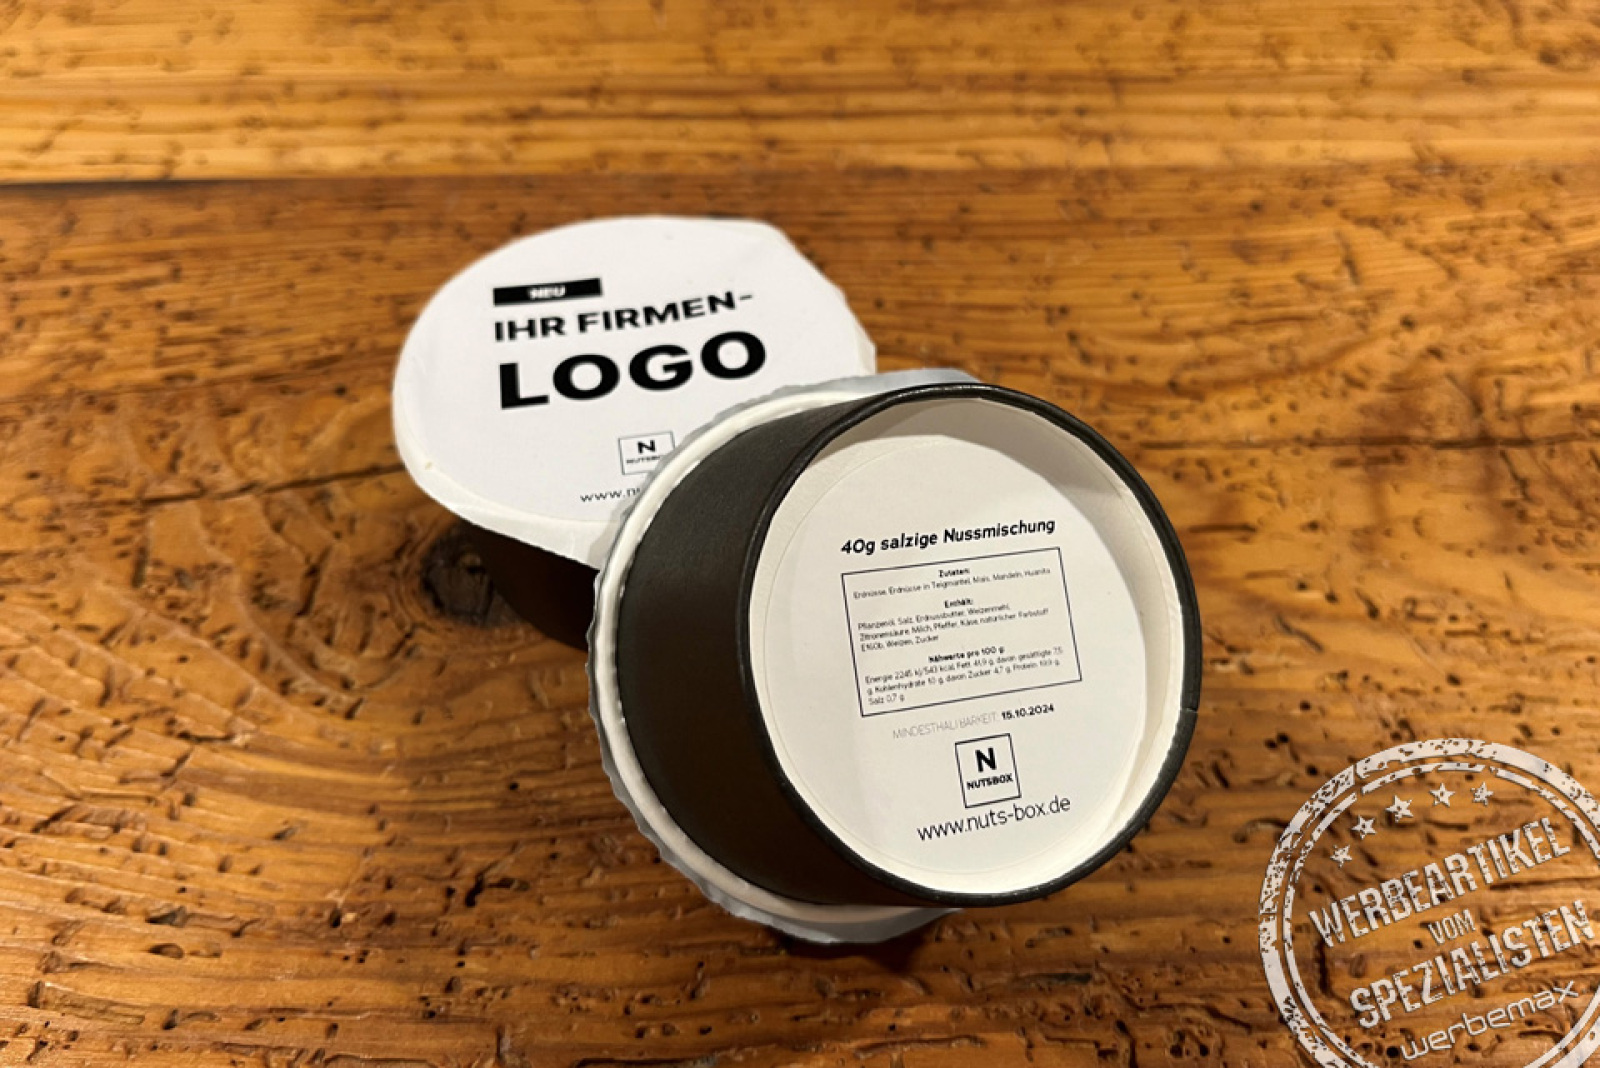 nutsbox salzige Nussmischung in der Box mit Logo